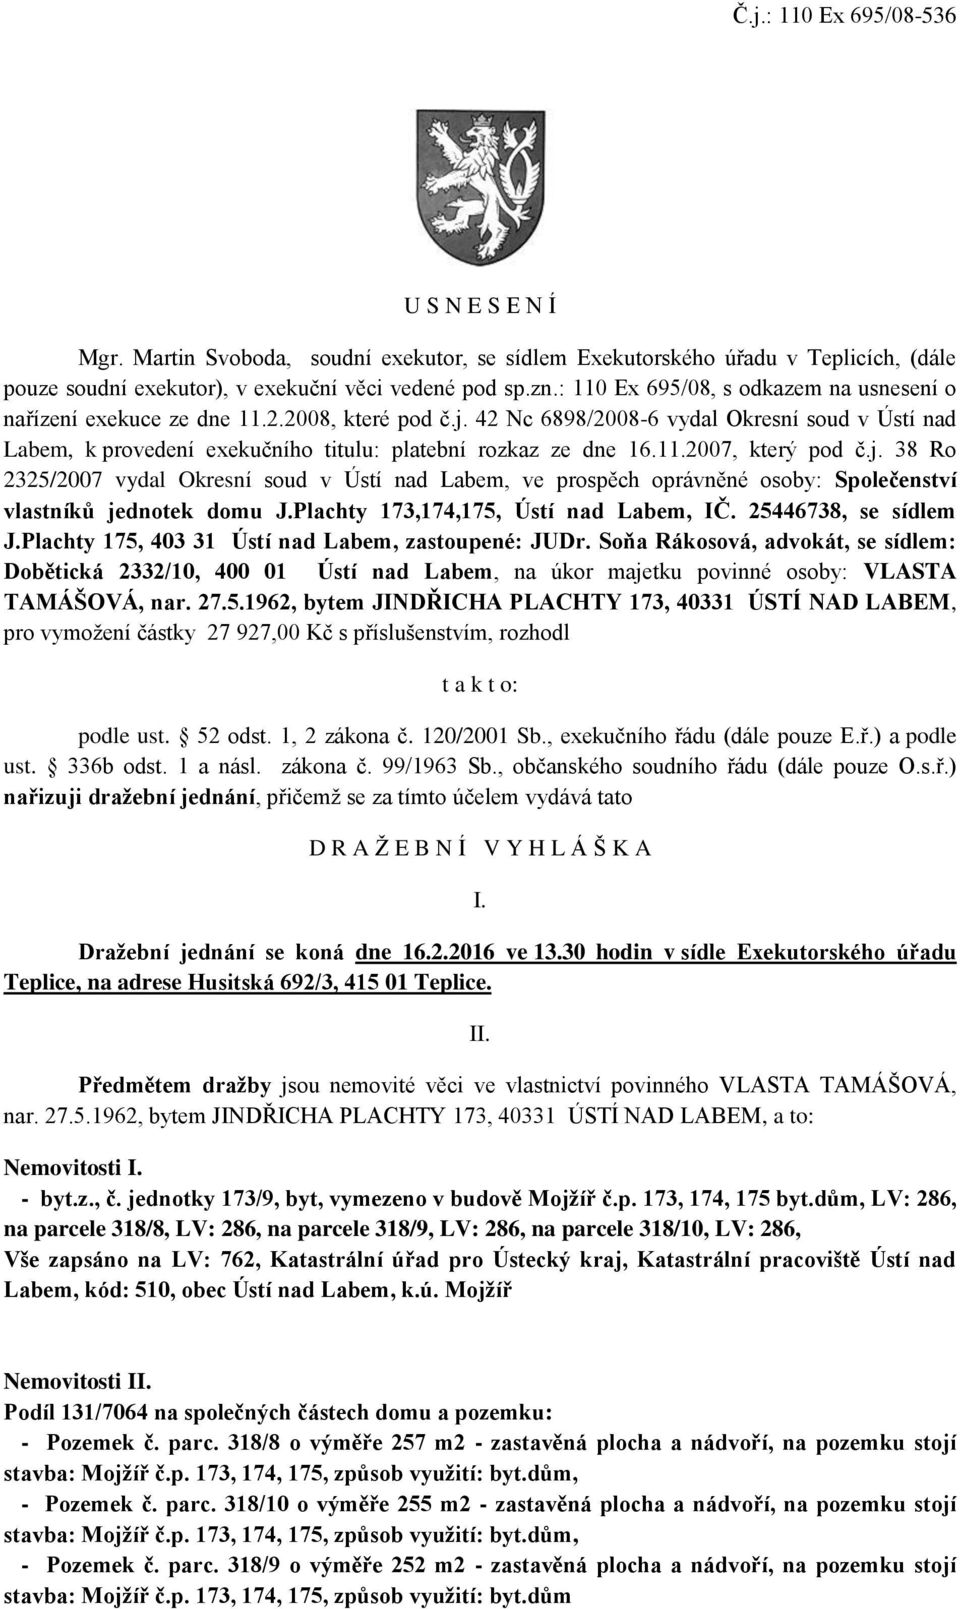 42 Nc 6898/2008-6 vydal Okresní soud v Ústí nad Labem, k provedení exekučního titulu: platební rozkaz ze dne 16.11.2007, který pod č.j.